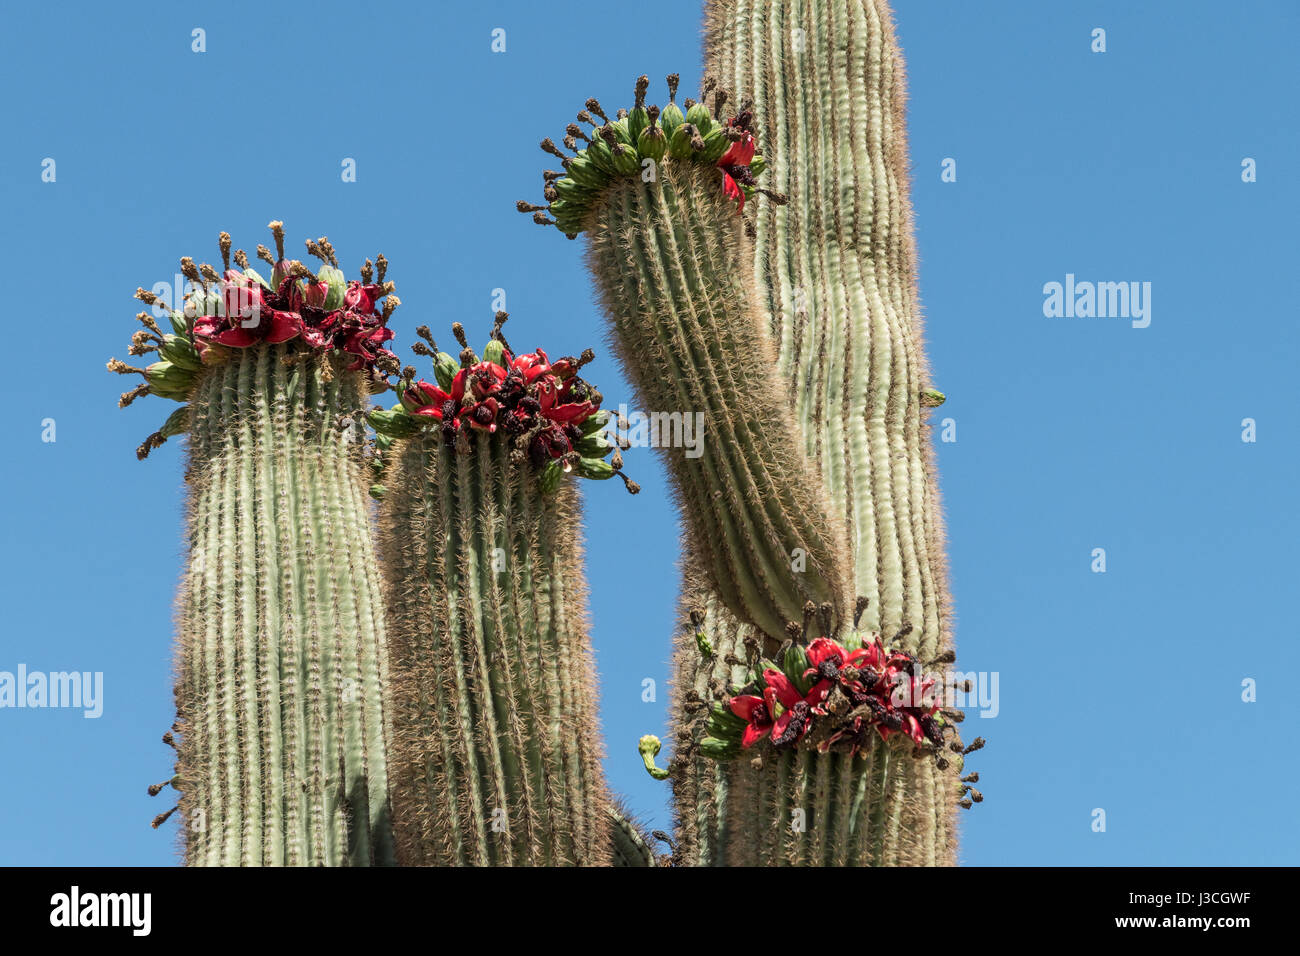 Nahaufnahme eines Saguaro Kaktus in Arizona mit roten Früchten an den Spitzen und ein ganz blauer Himmel als Hintergrund. Stockfoto